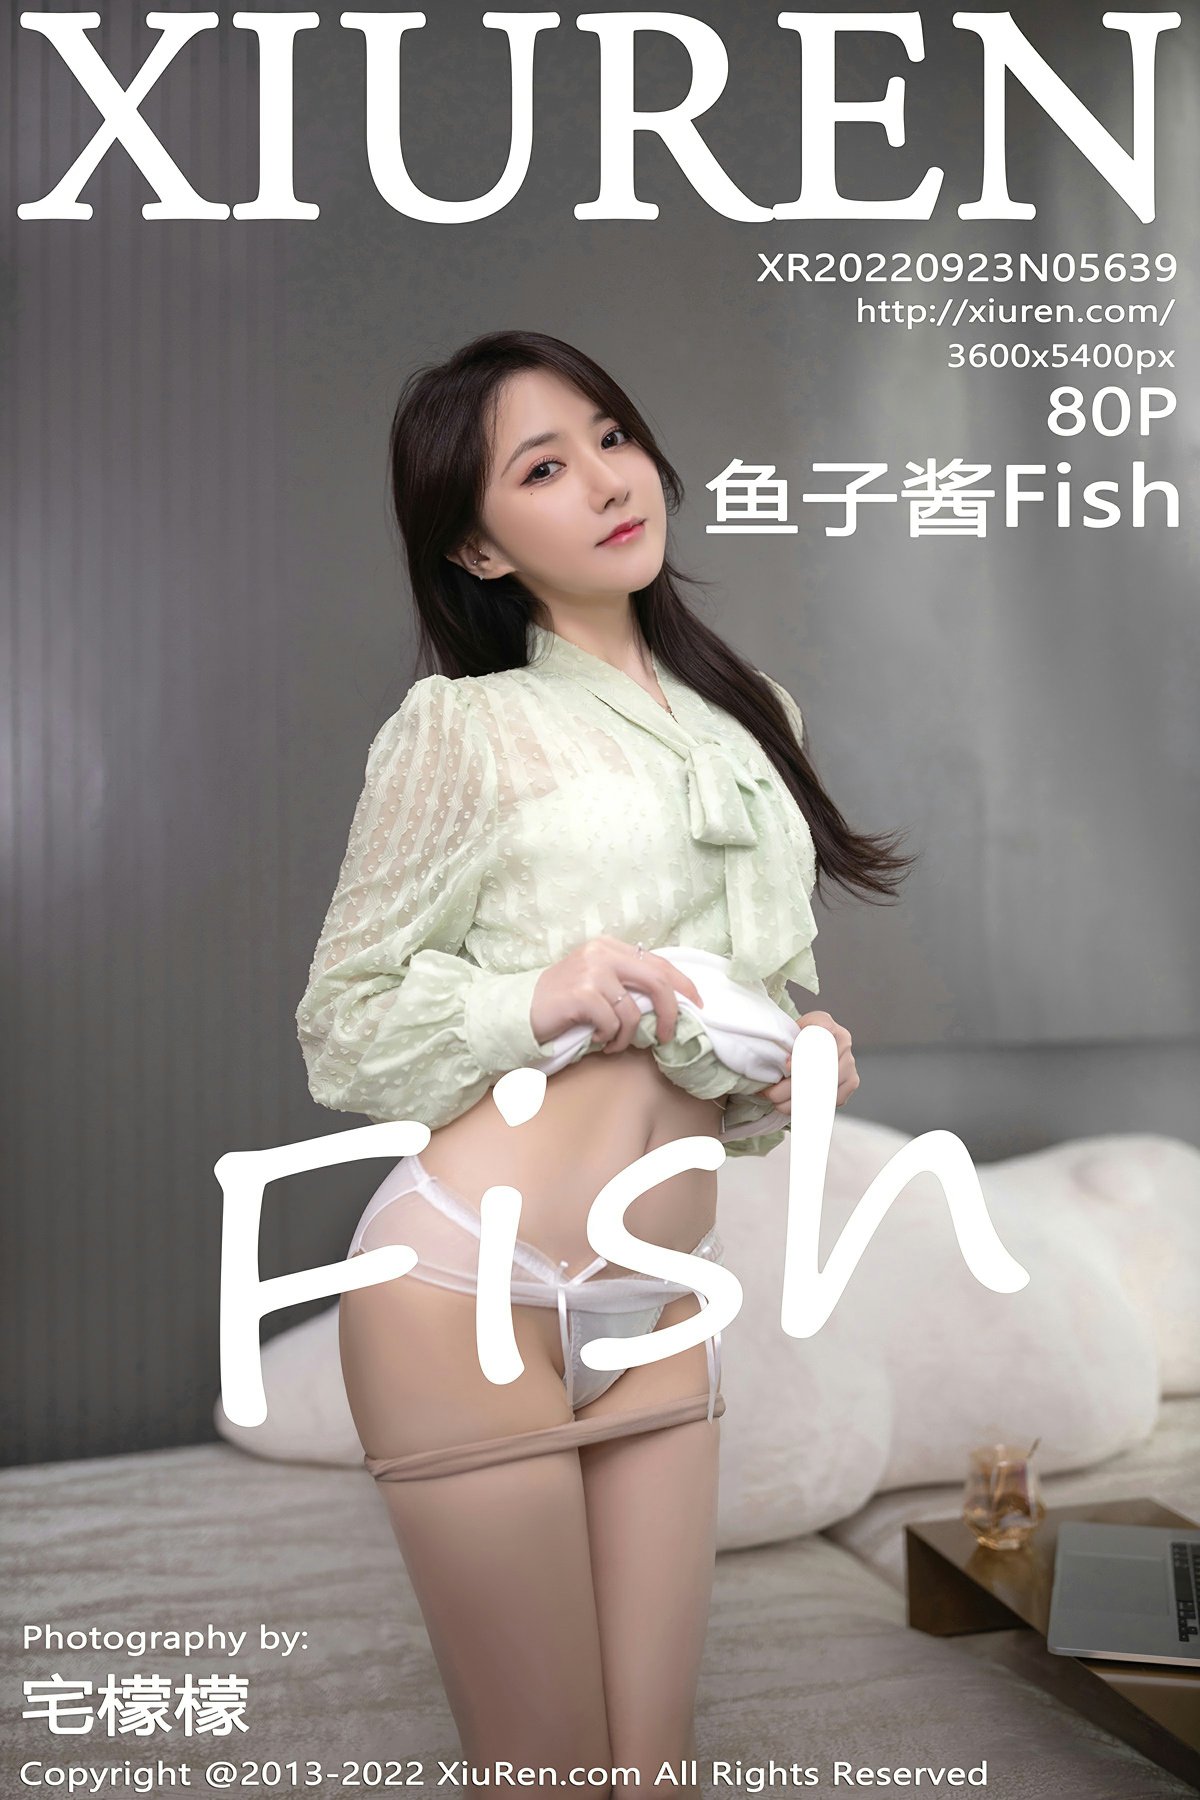 [XiuRen秀人网] No.5639 鱼子酱Fish1 